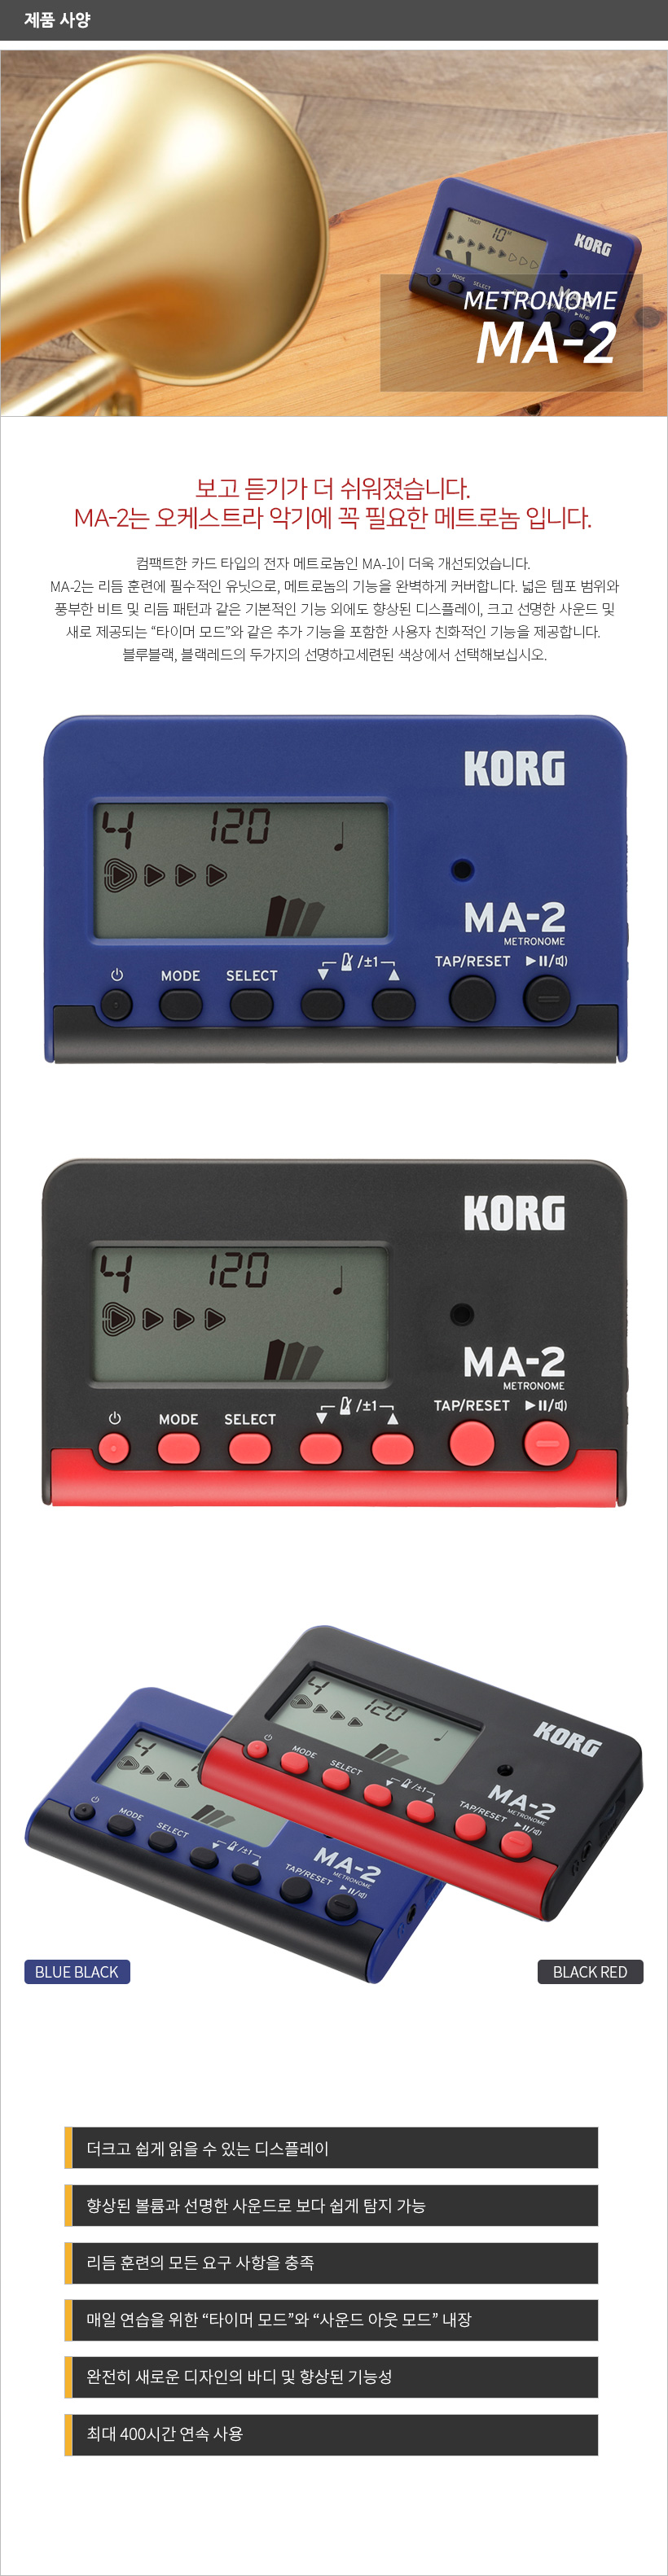 KORG 코르그 MA-2 제품 사양